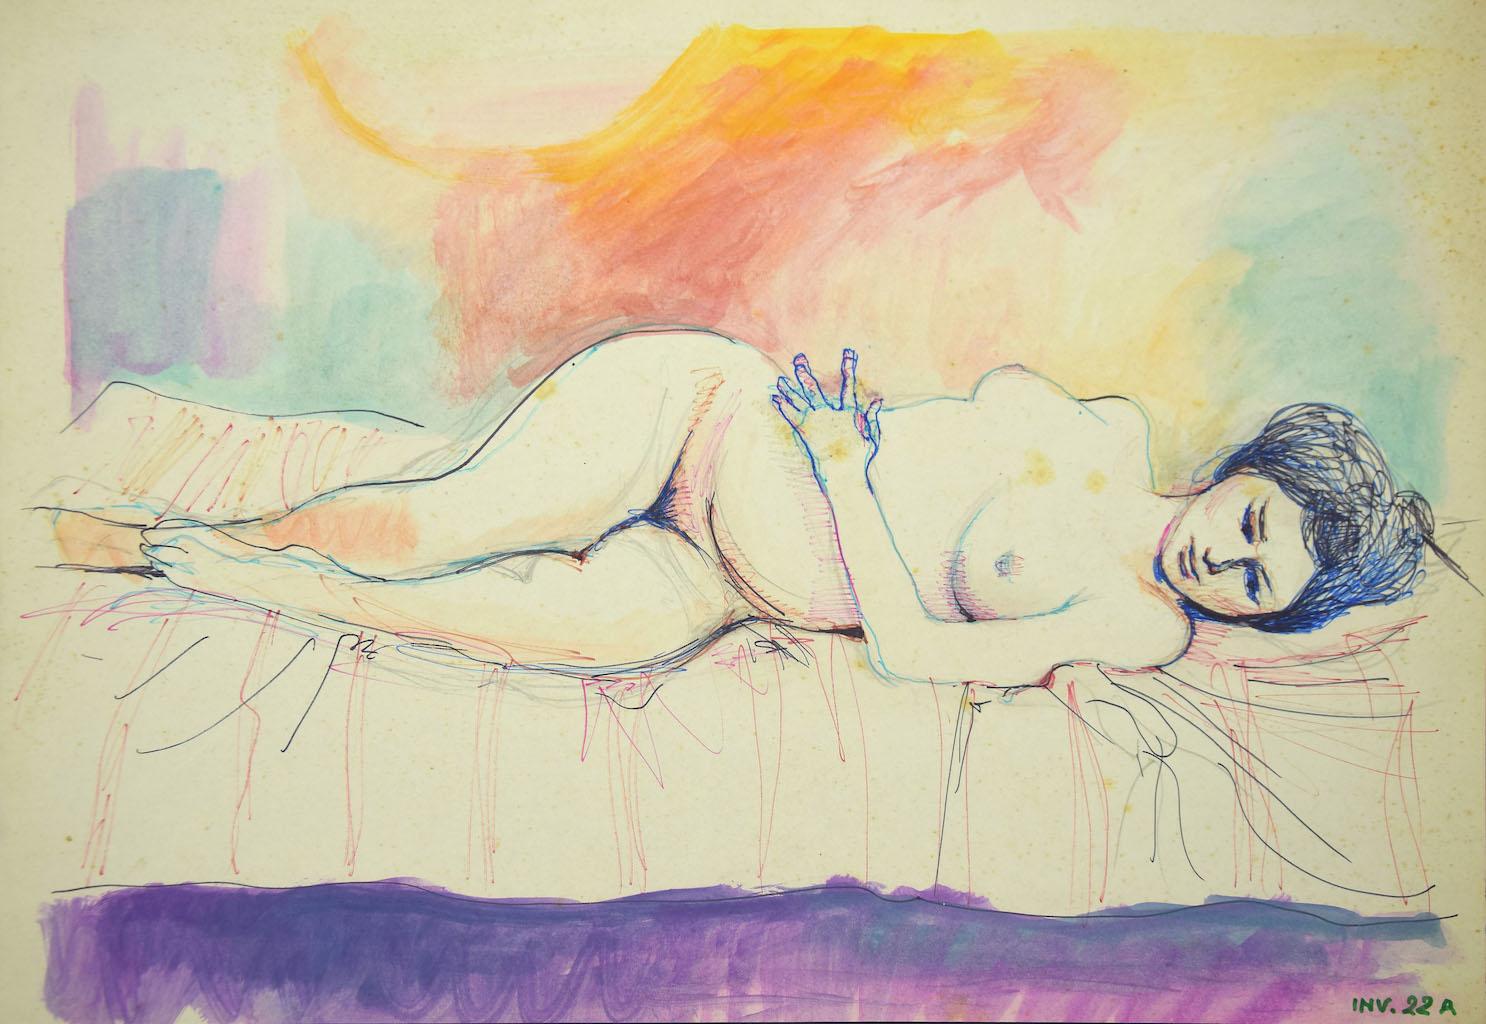 Femme nue  est une œuvre d'art originale en techniques mixtes sur carton réalisée par Leo Guida au XXe siècle.

L'état de conservation est bon, à l'exception de quelques rousseurs.

Dimension de la feuille : 35 x 50

ONn la marge inférieure droite